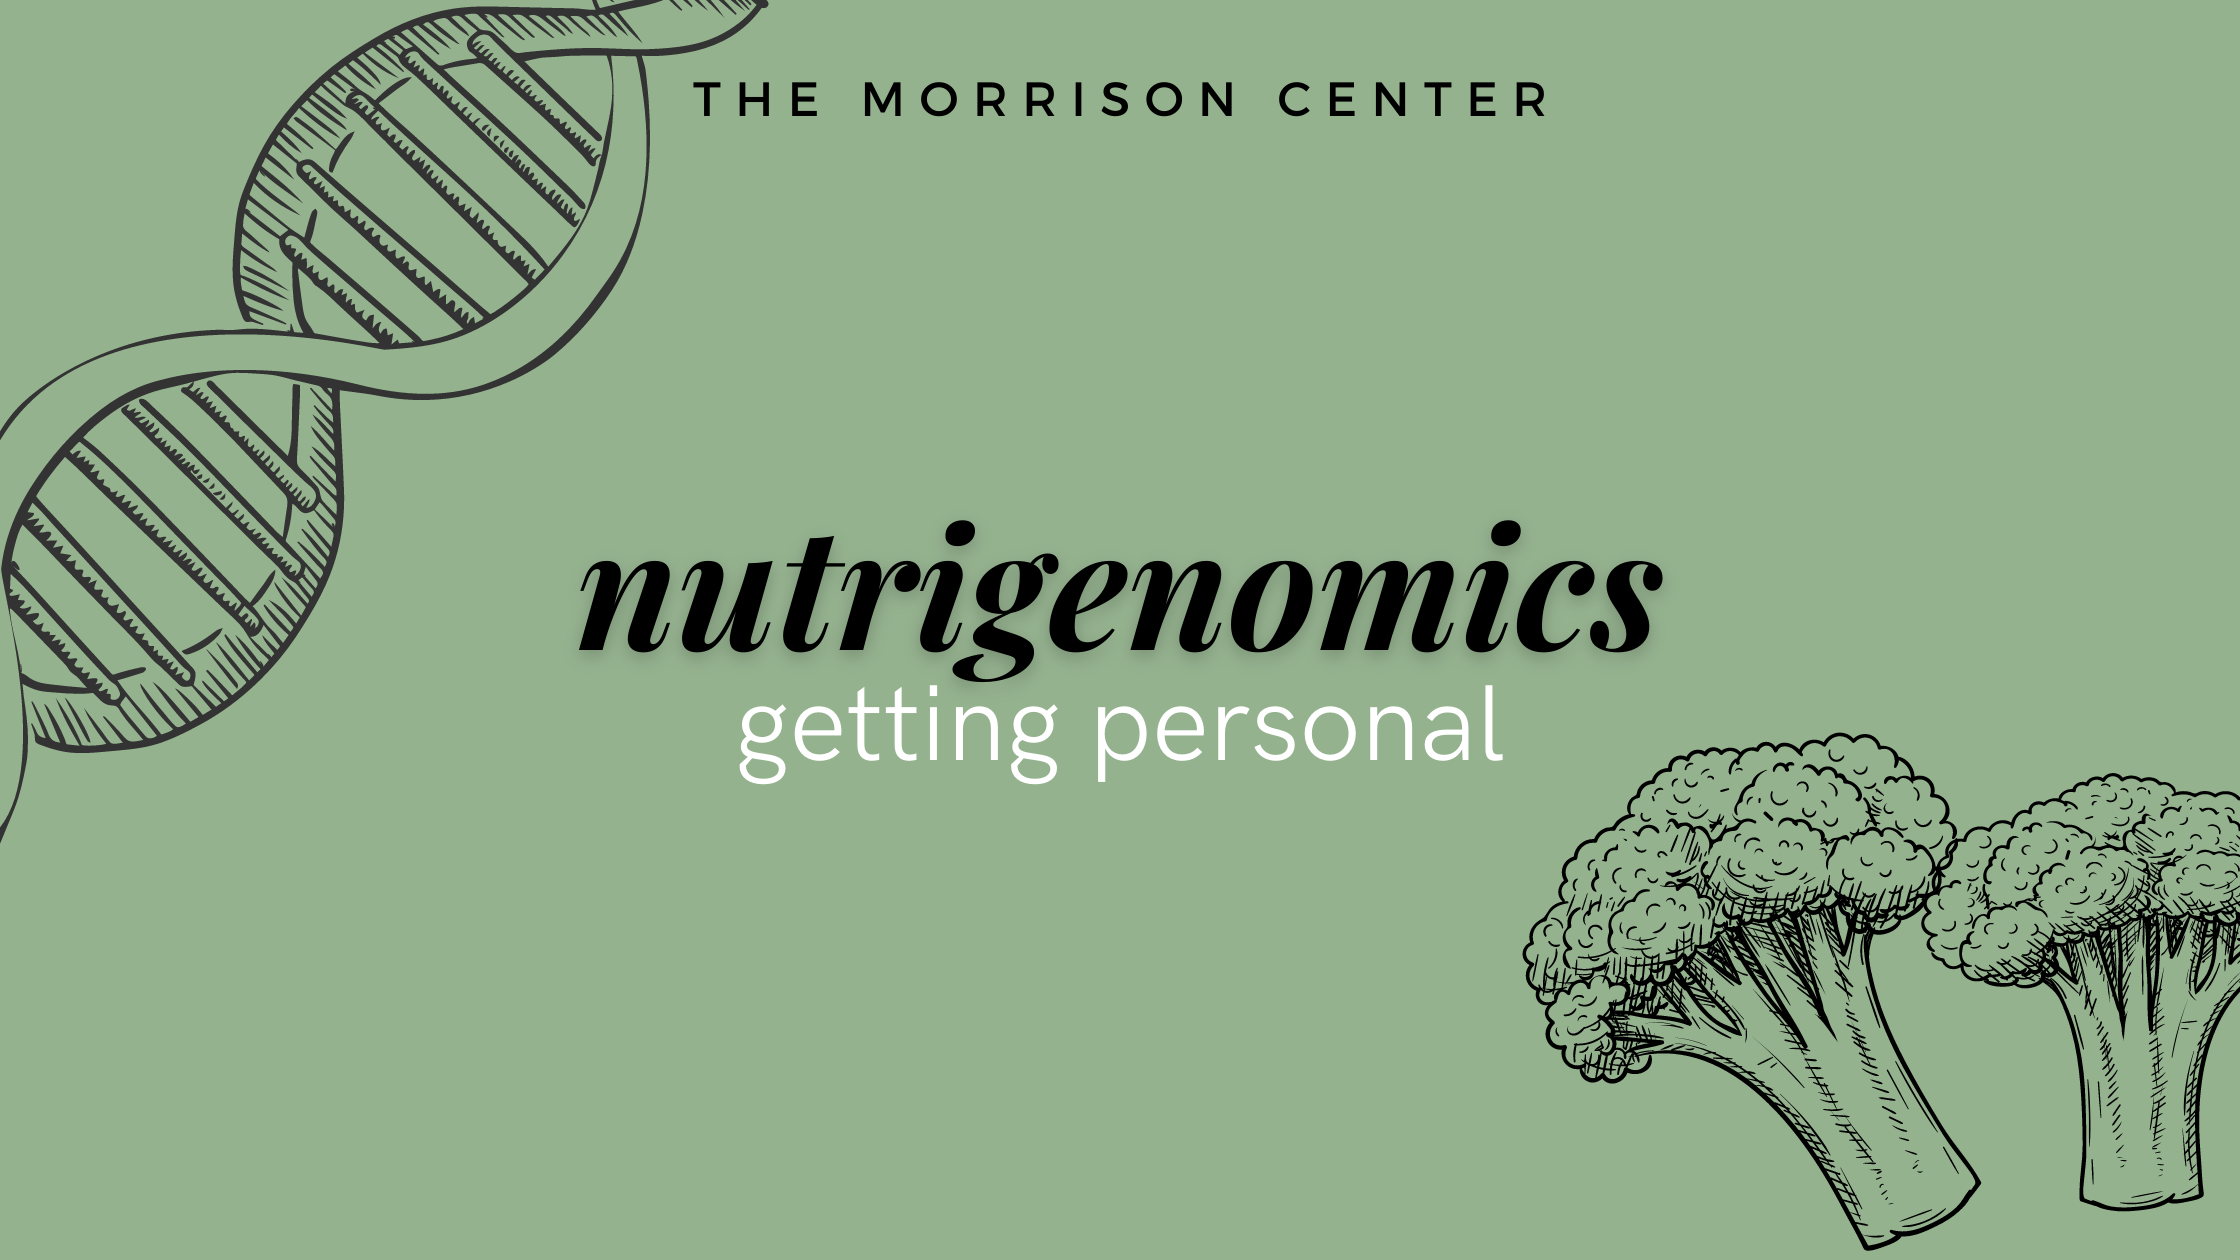 Nutrigenomics: Getting Personal